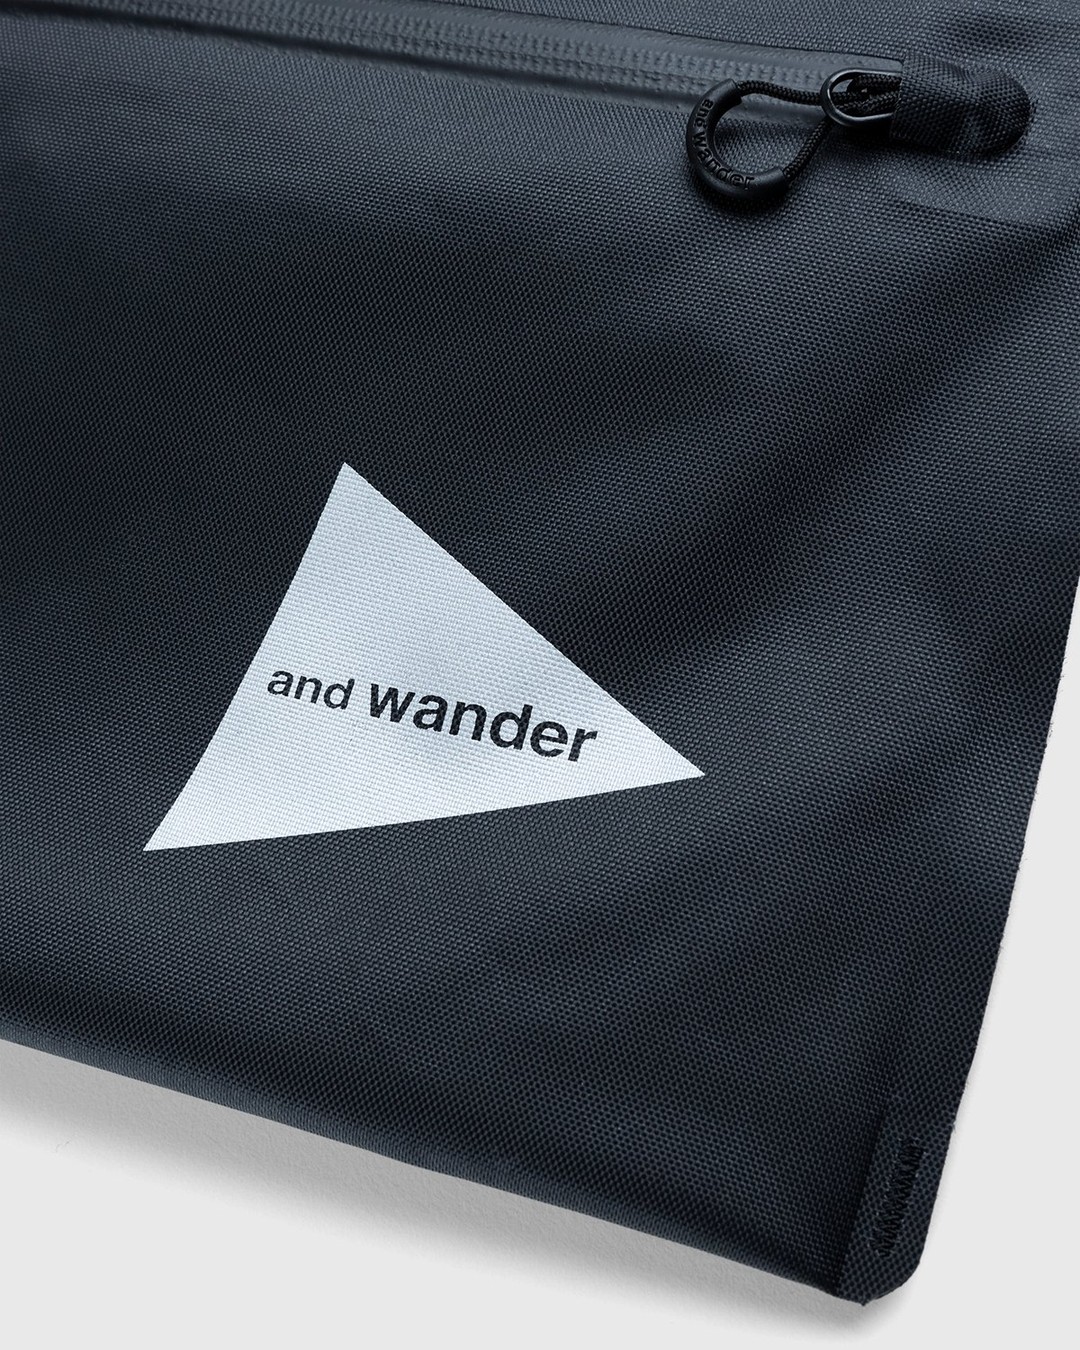 And Wander – Waterproof Satchel Black - Shoulder Bags - Black - Image 3